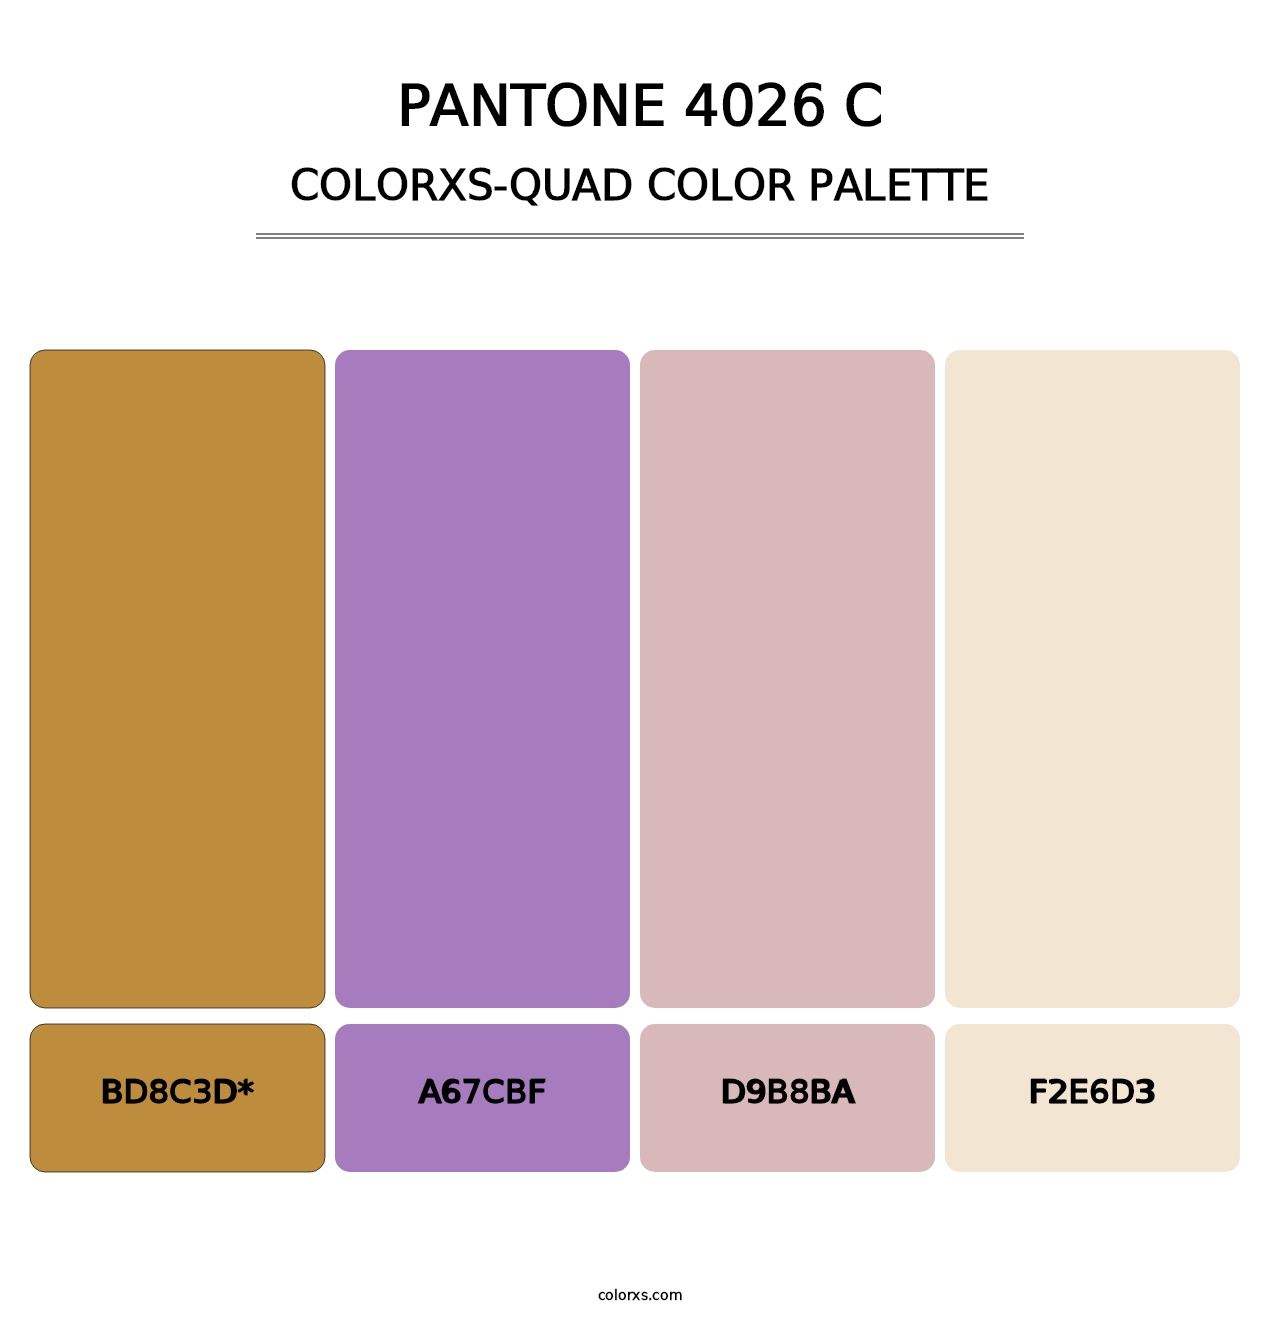 PANTONE 4026 C - Colorxs Quad Palette